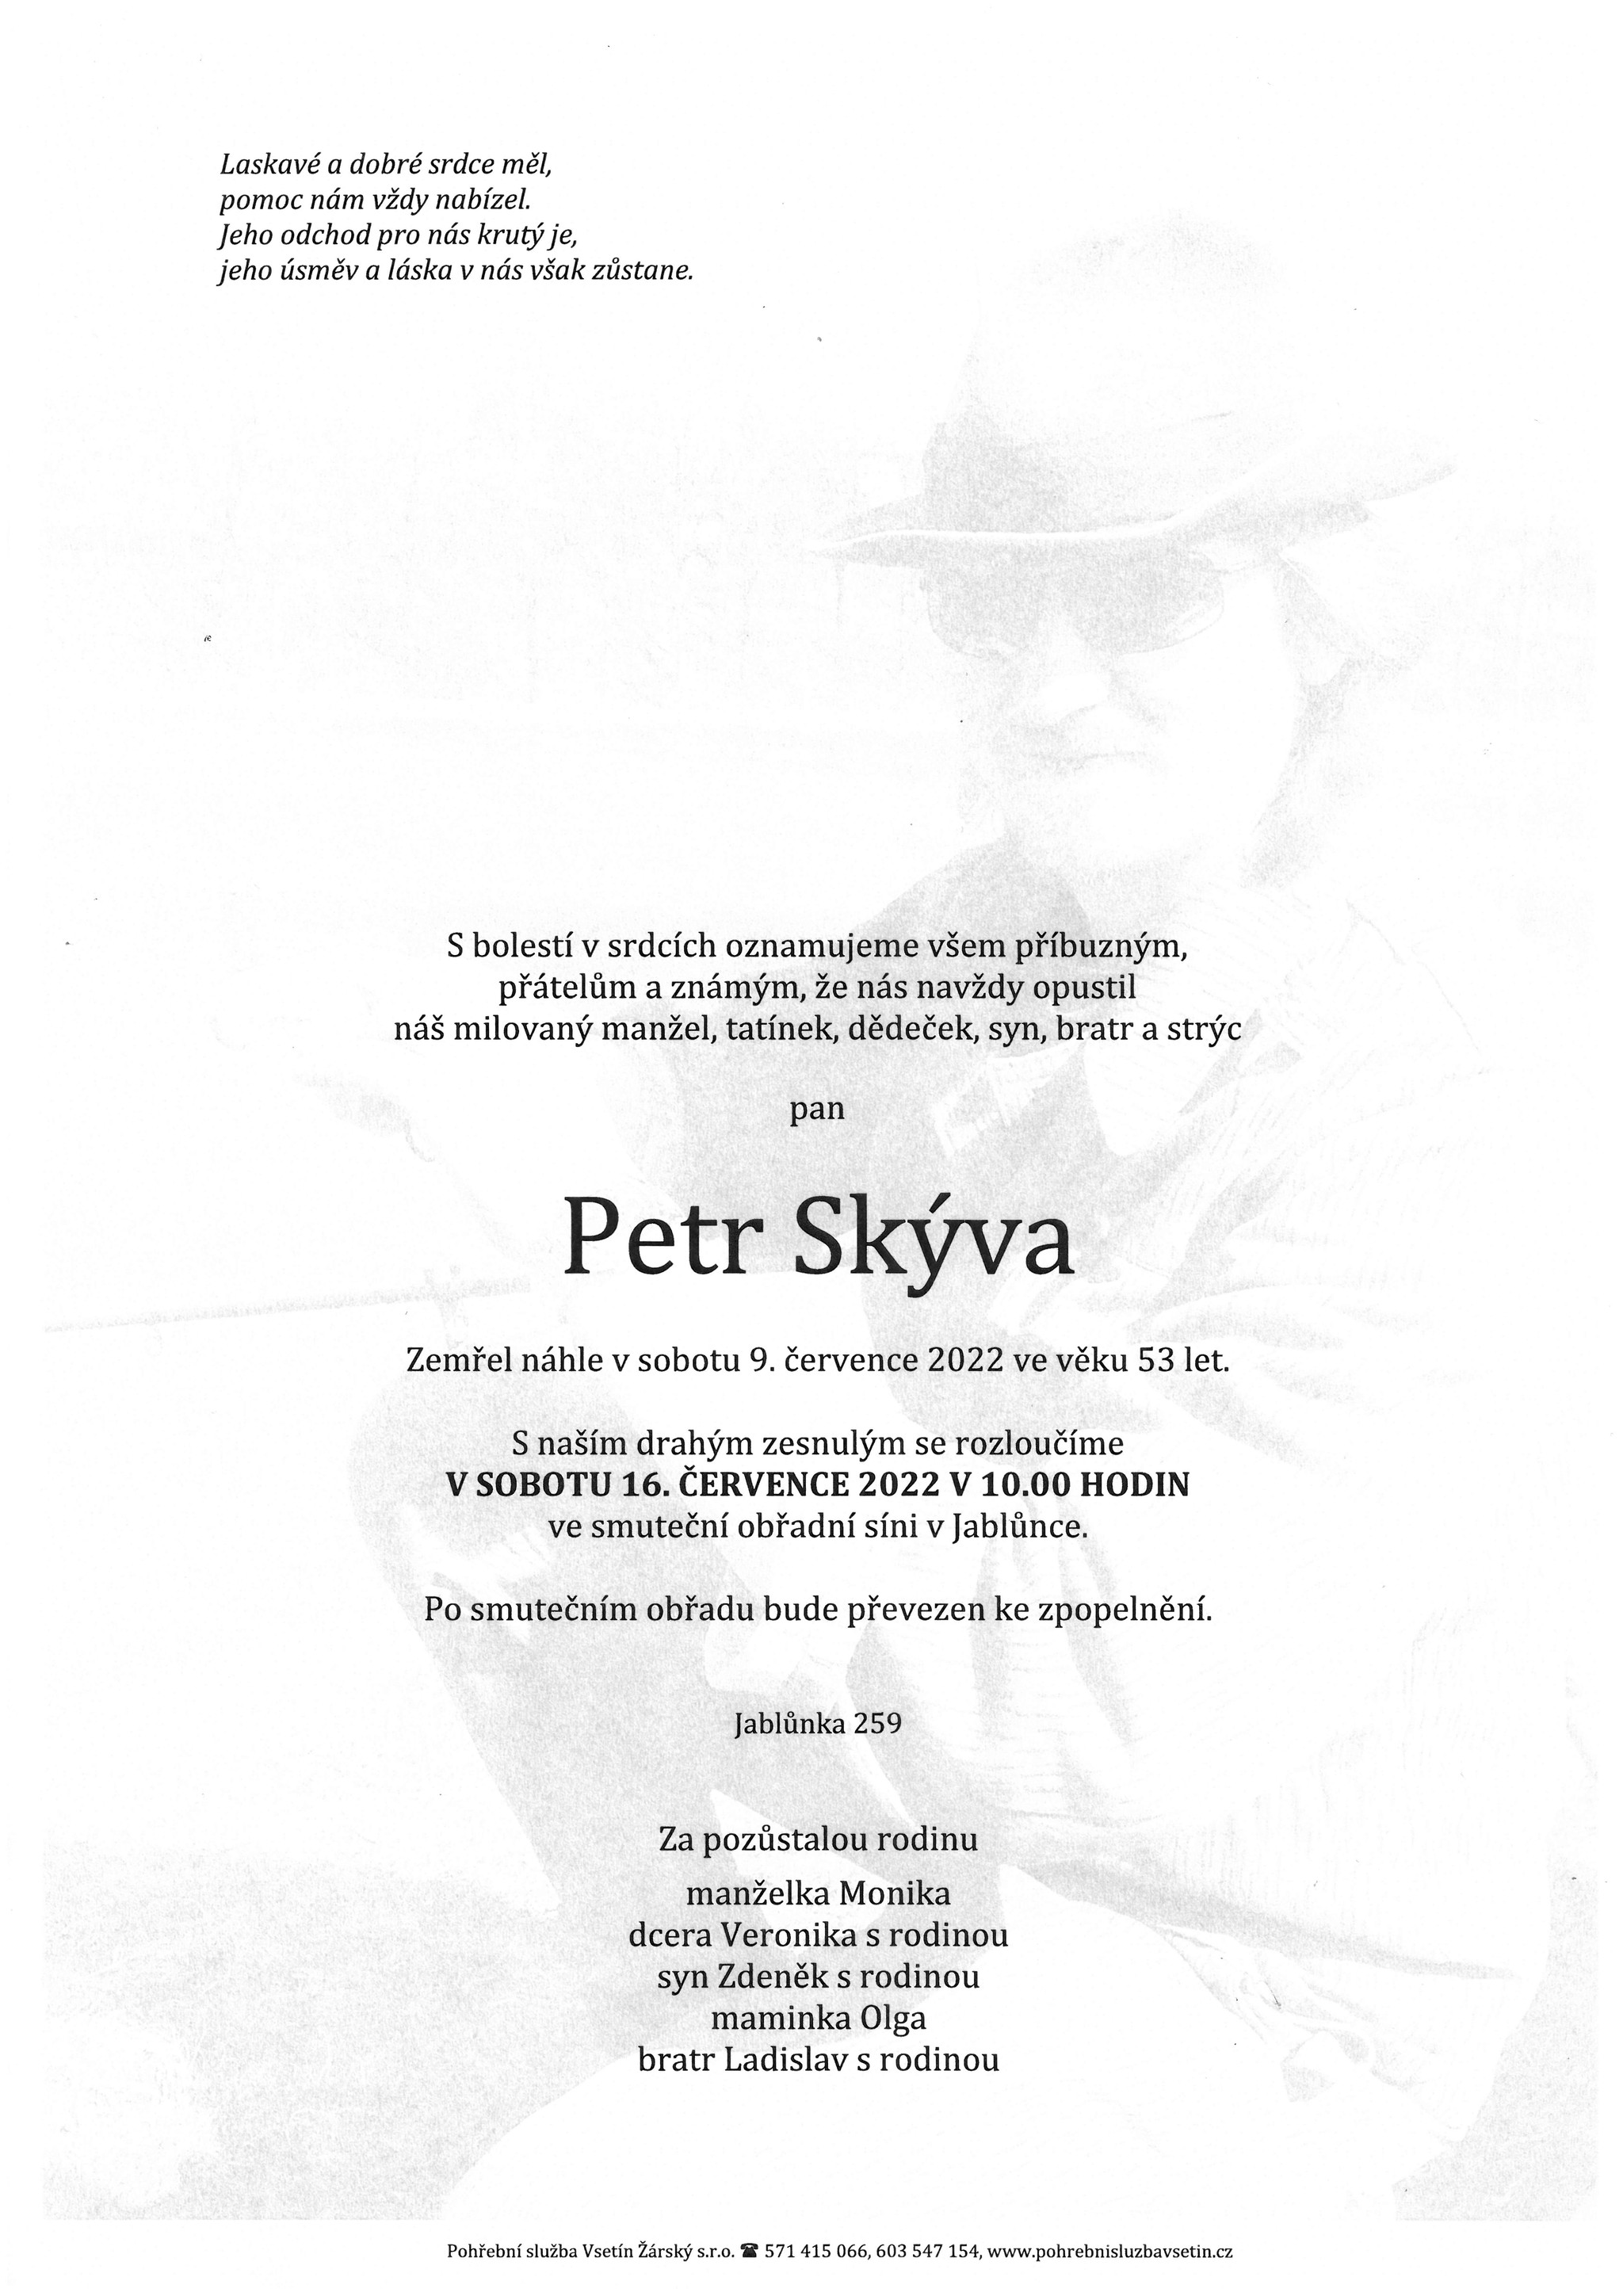 Petr Skýva